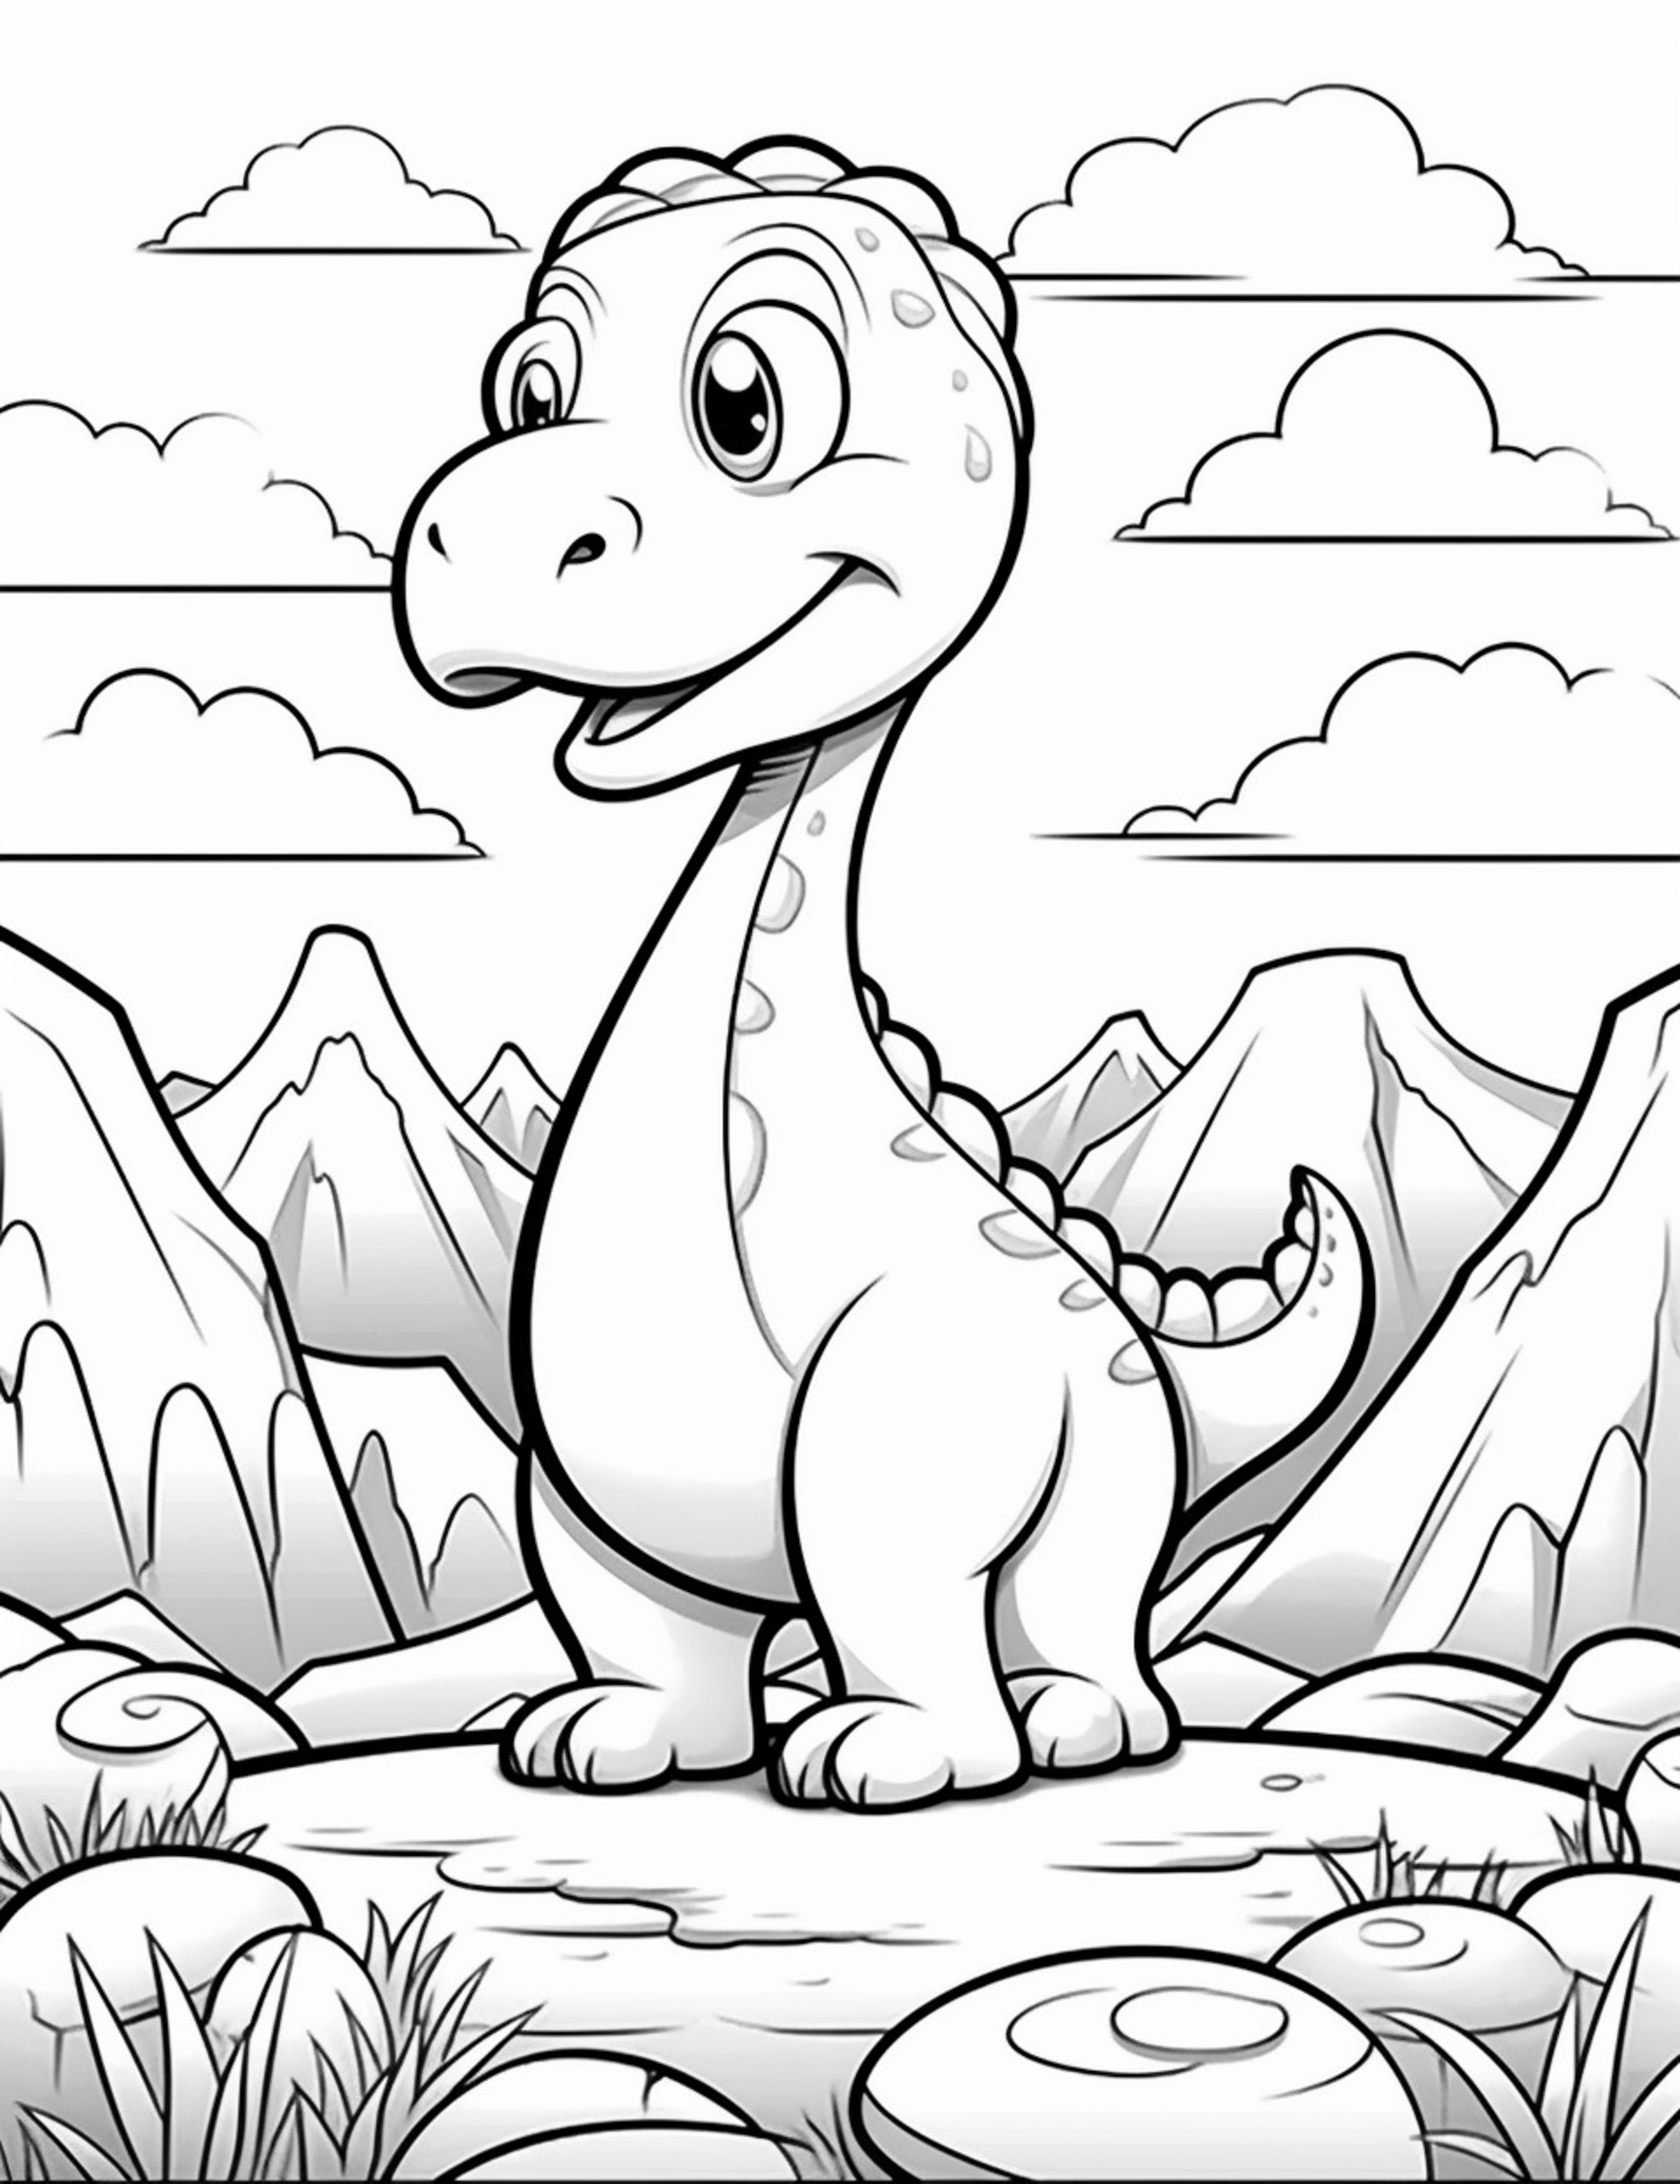 Раскраска сказочный динозавр с большой головой формата А4 в высоком качестве